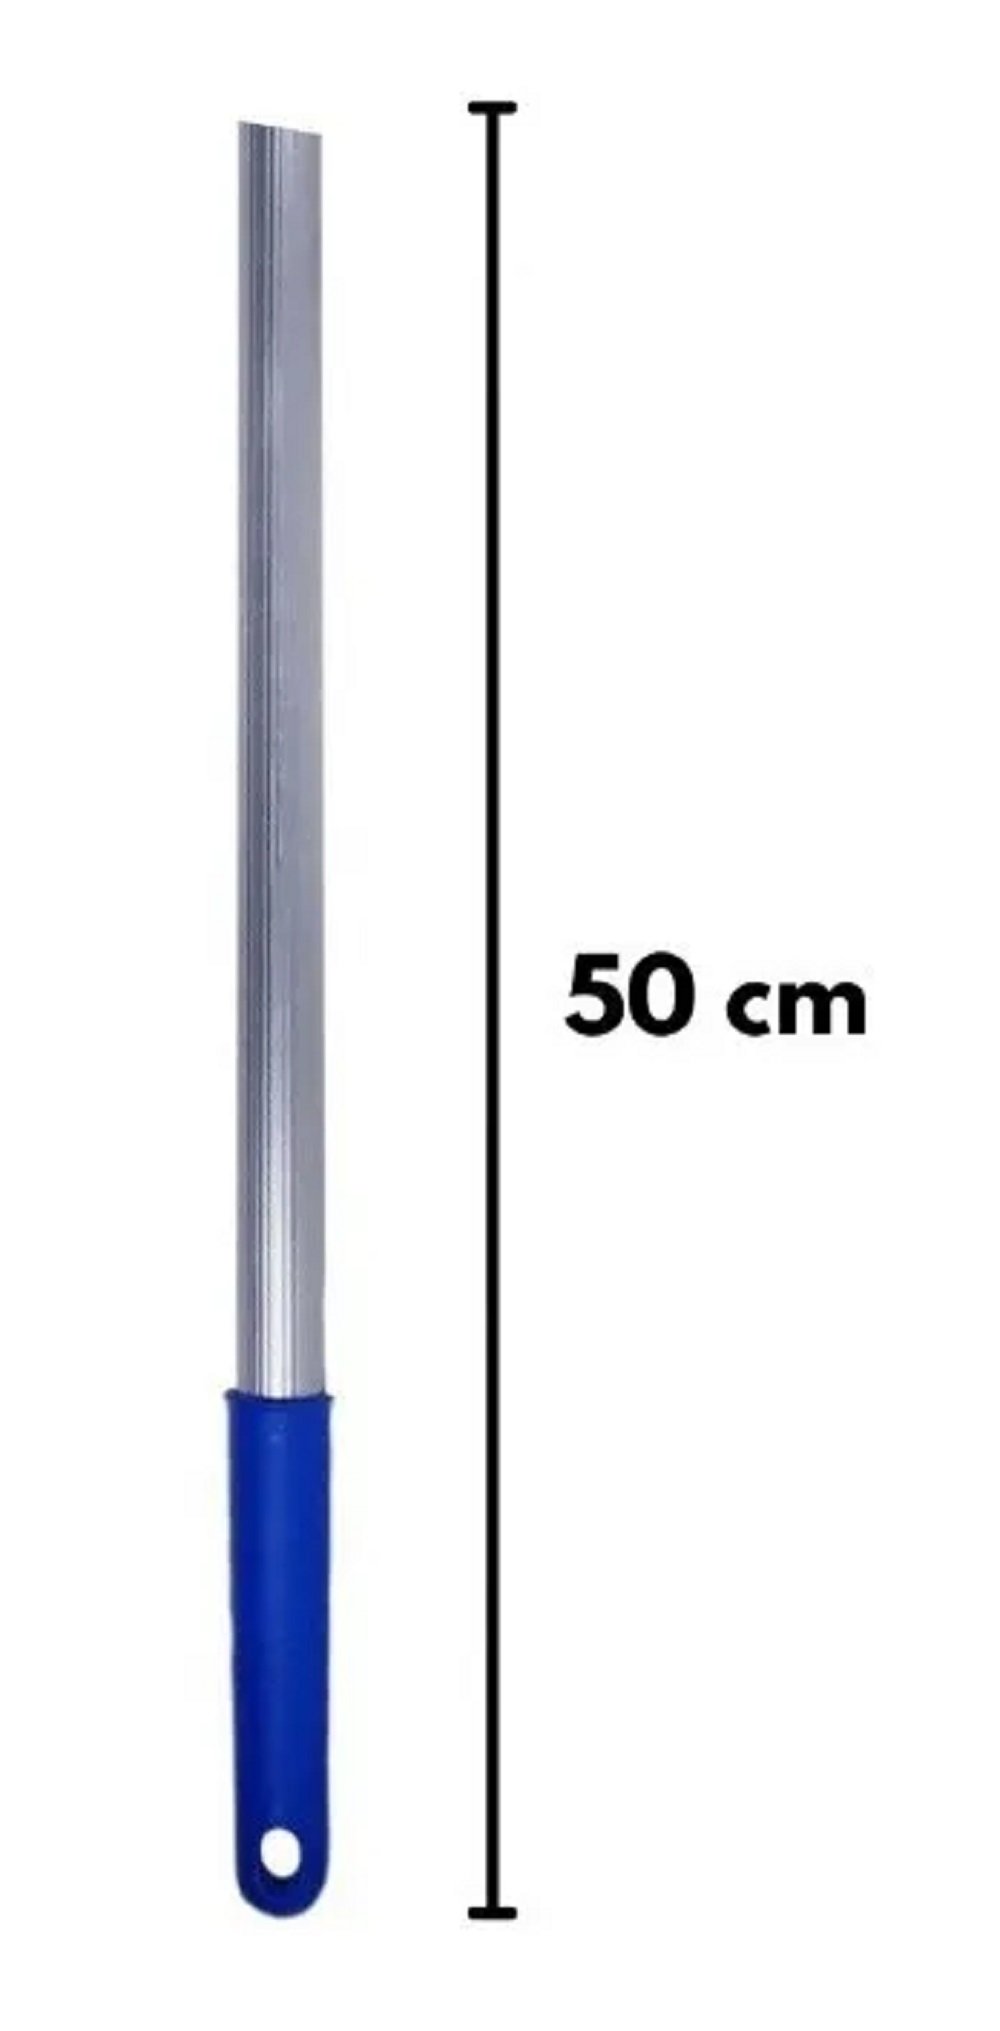 Rodo Limpa Vidros Combinado Com Capa de Microfibra 25cm e Cabo 50cm - 3